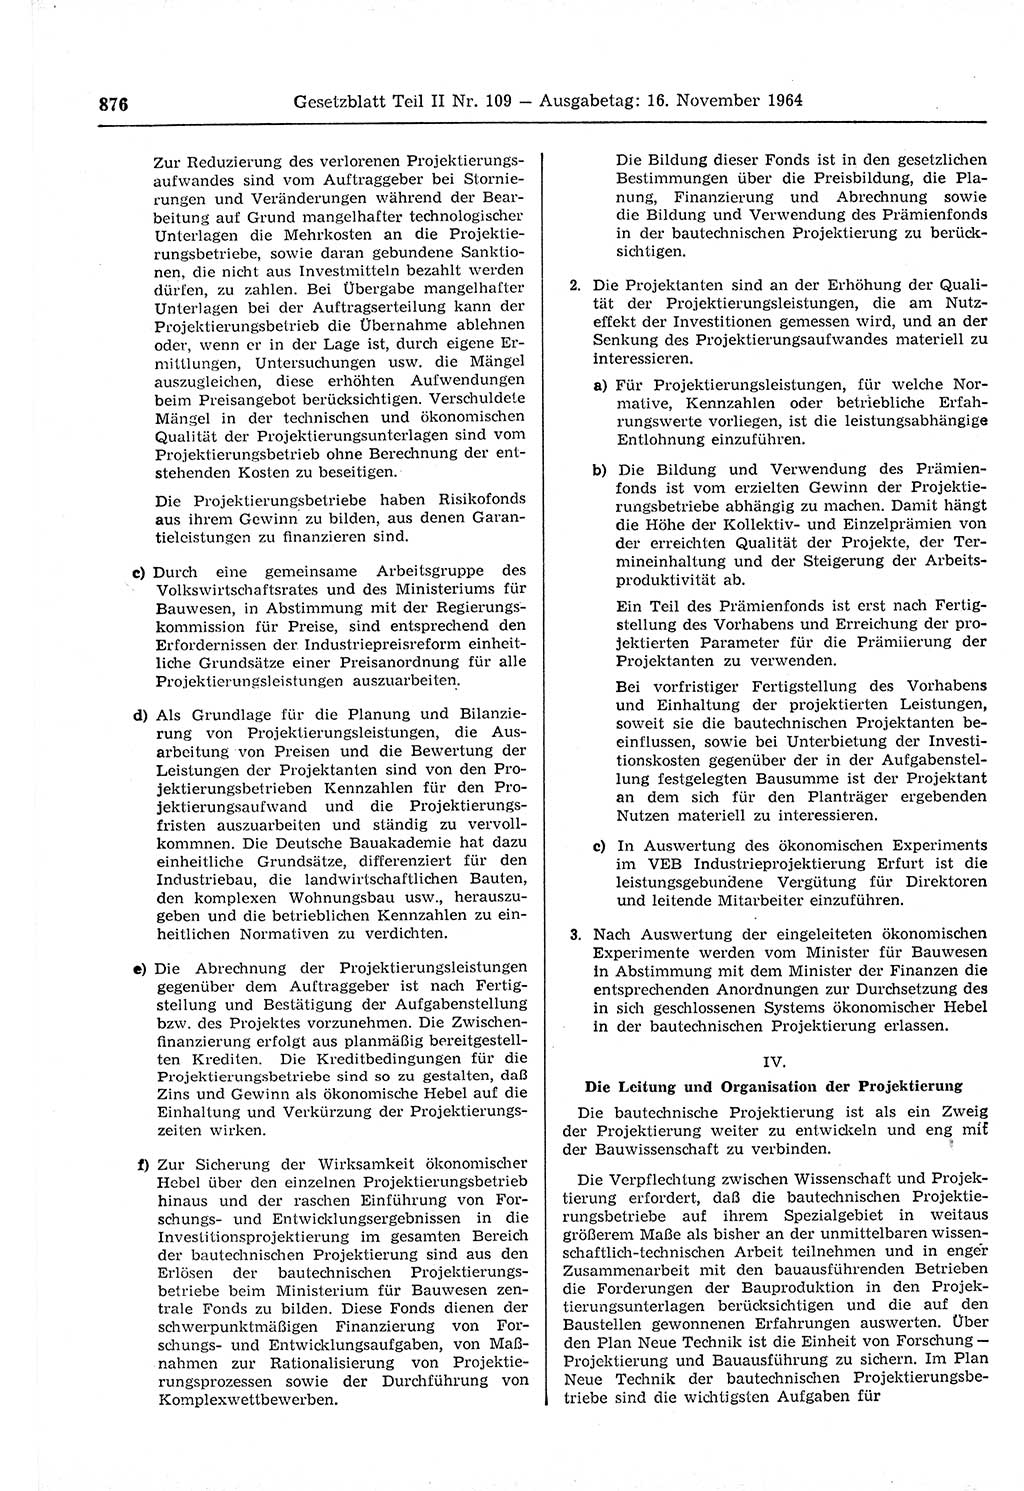 Gesetzblatt (GBl.) der Deutschen Demokratischen Republik (DDR) Teil ⅠⅠ 1964, Seite 876 (GBl. DDR ⅠⅠ 1964, S. 876)